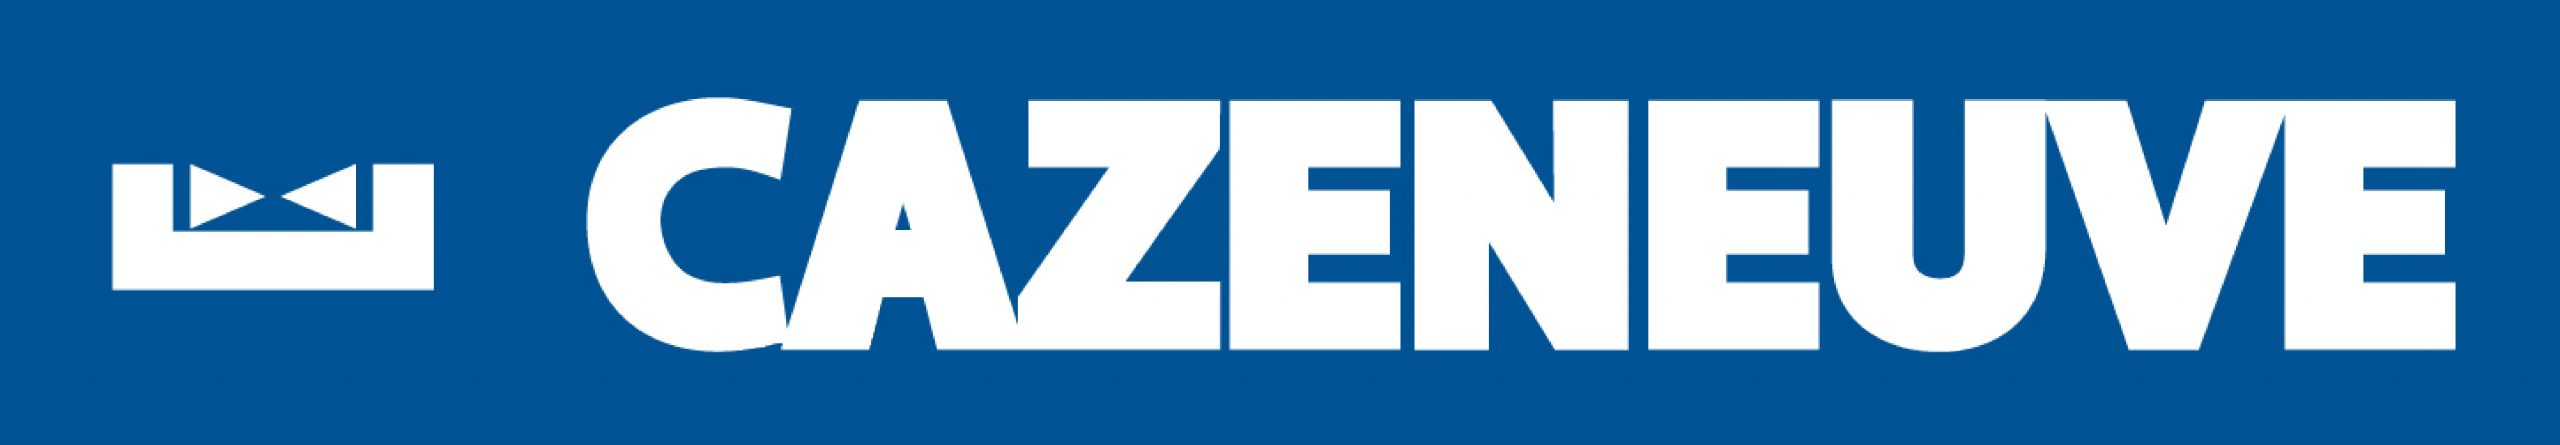 Logo-CAZENEUVE-2019-scaled